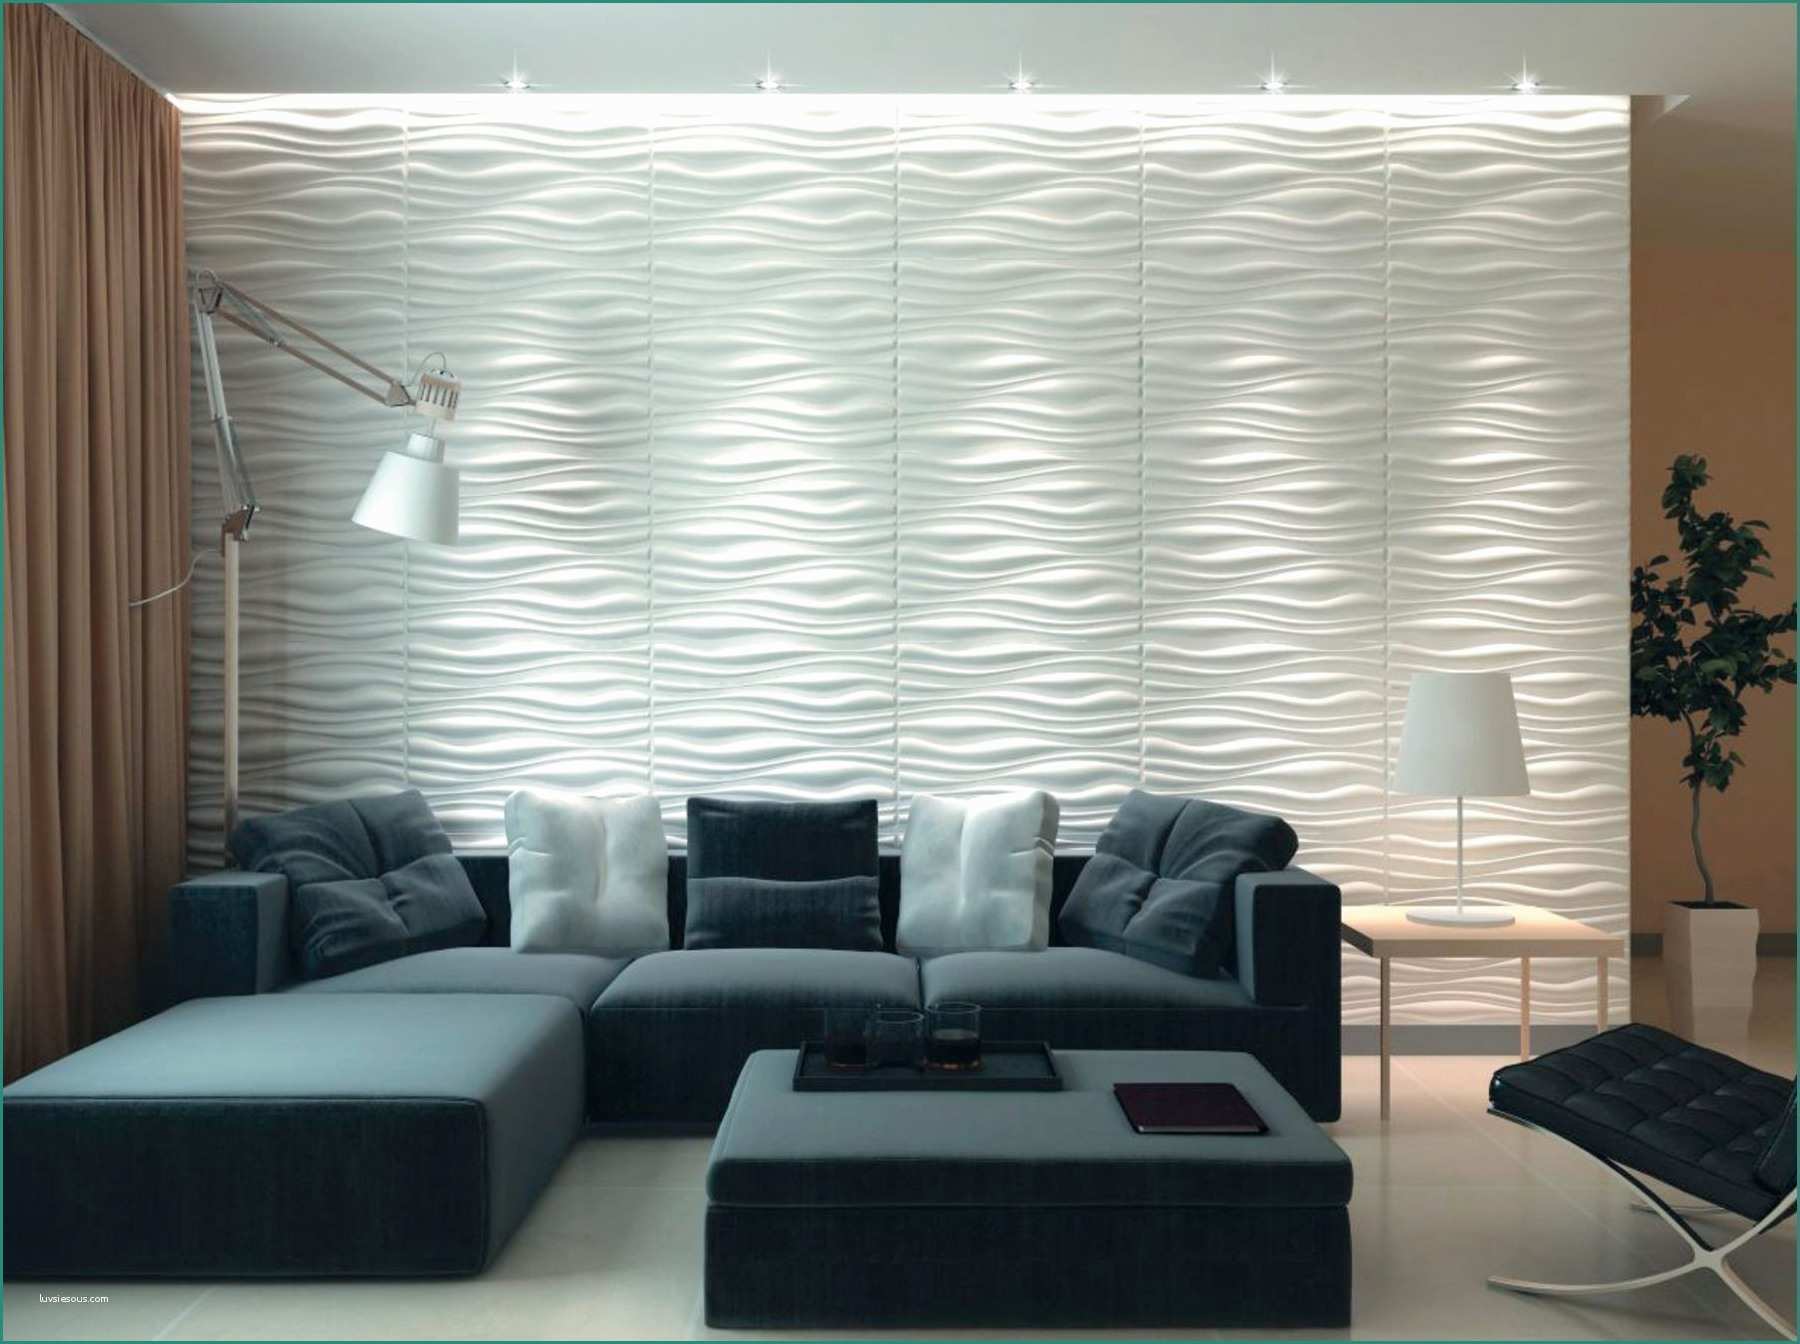 Pannelli polistirolo per soffitti leroy merlin e pareti for Pannelli decorativi in polistirolo pareti interne